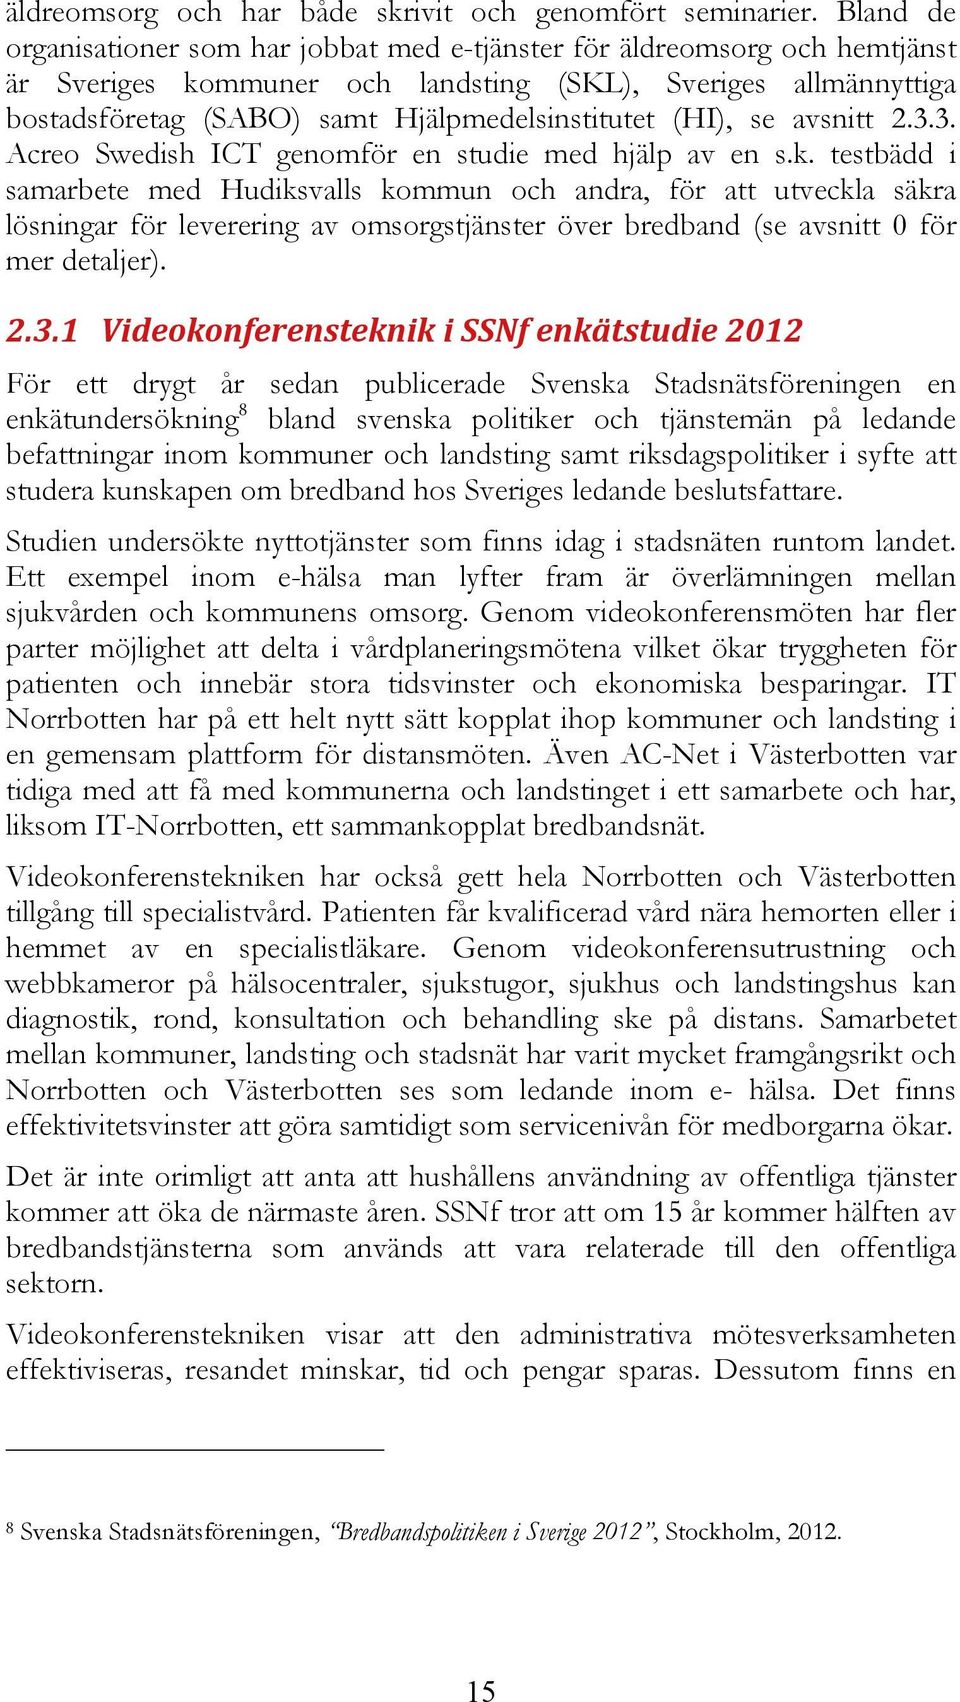 (HI), se avsnitt 2.3.3. Acreo Swedish ICT genomför en studie med hjälp av en s.k.